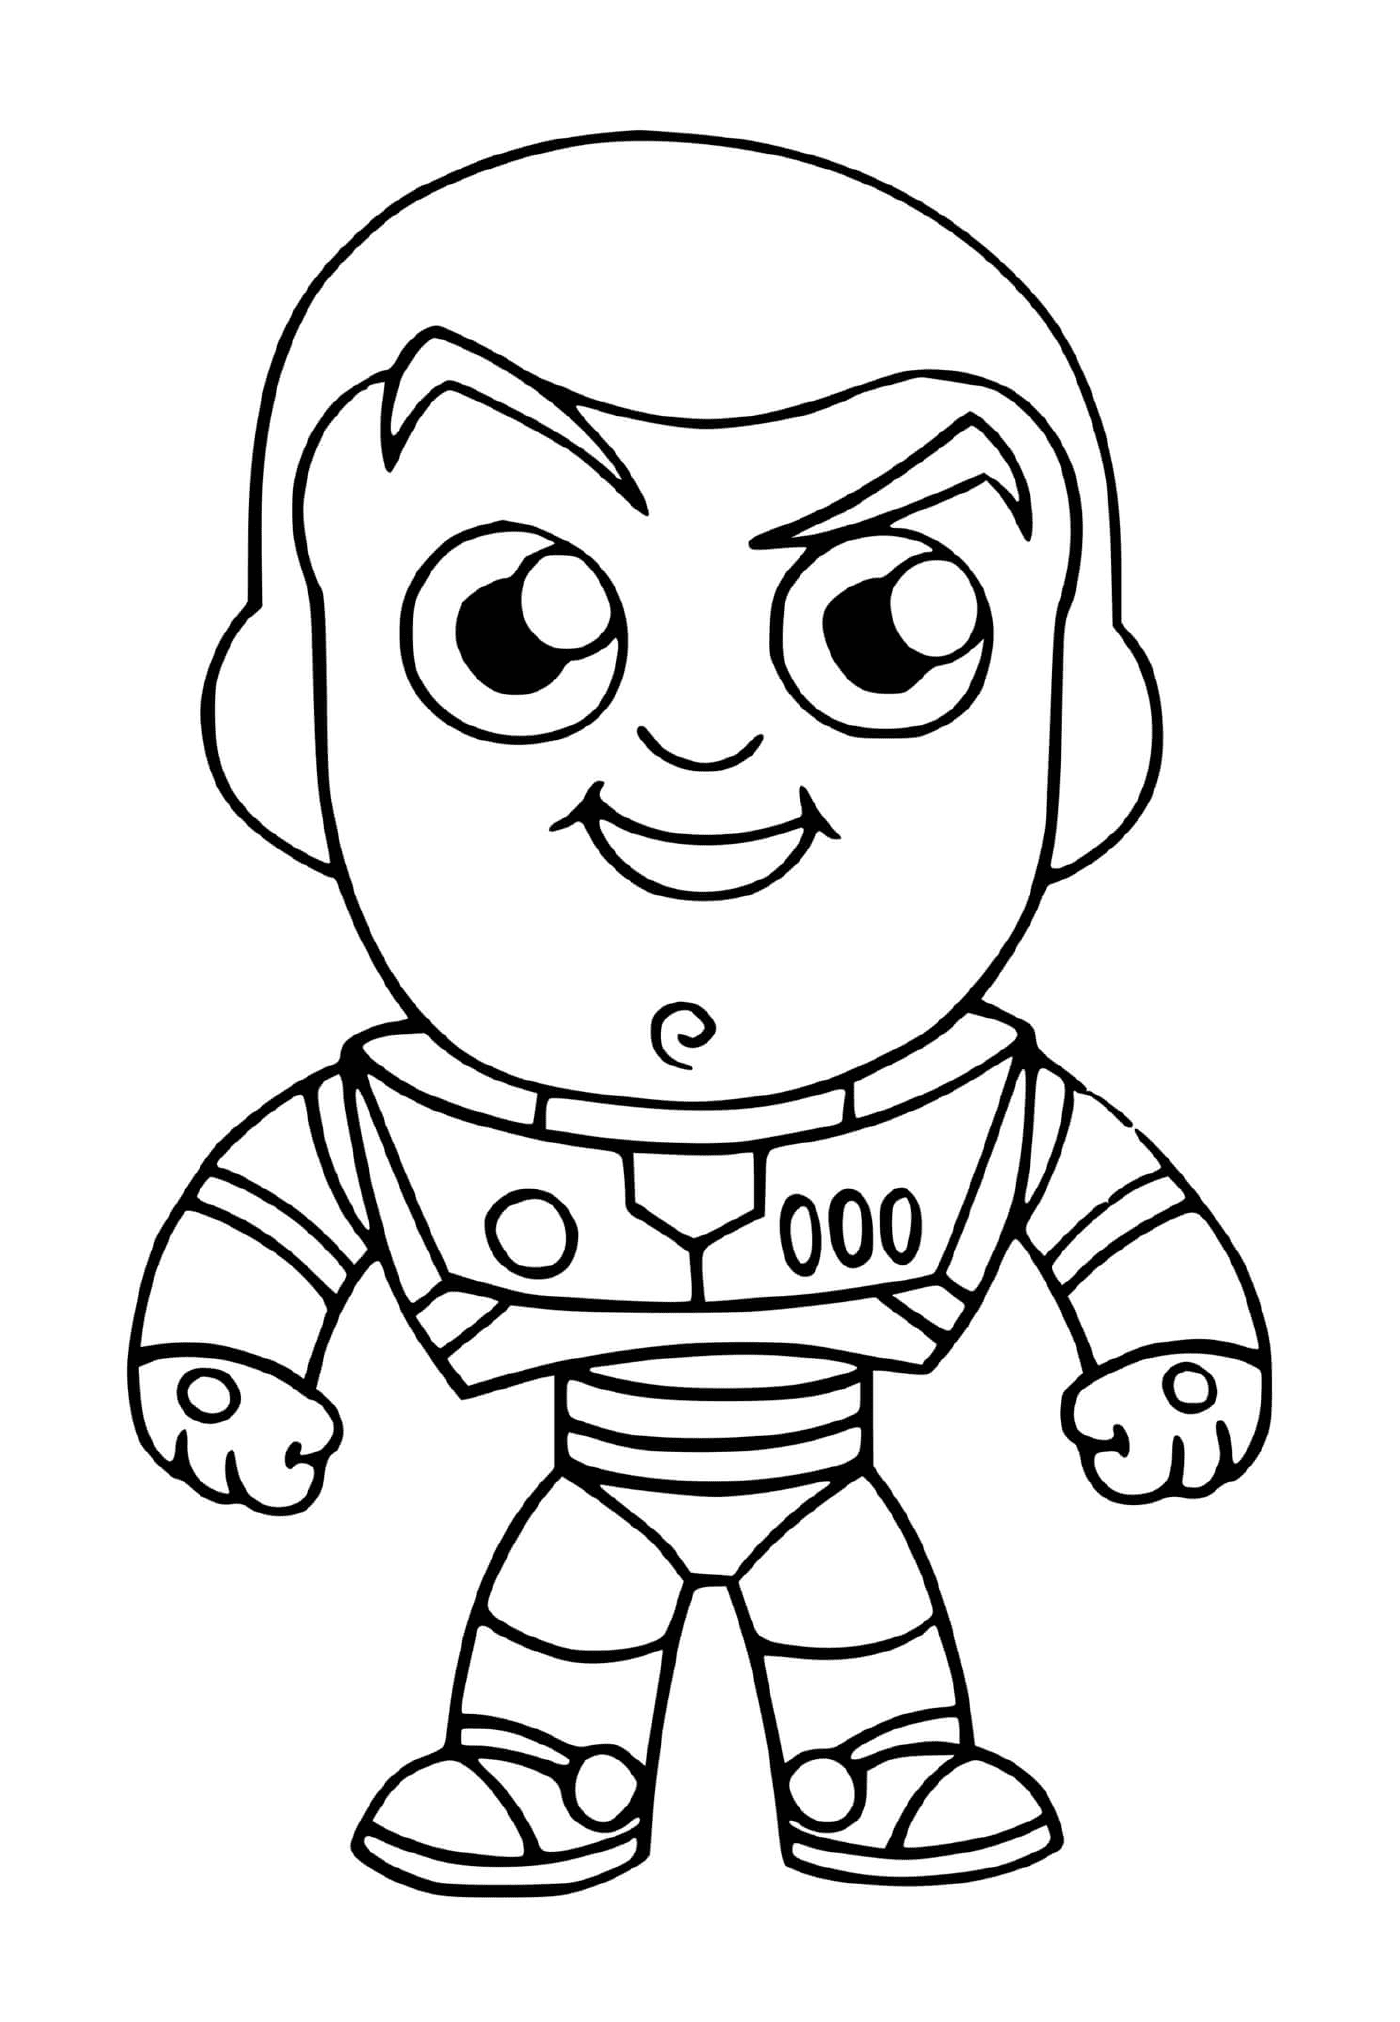  Buzz flash, personaje de la película Toy Story 